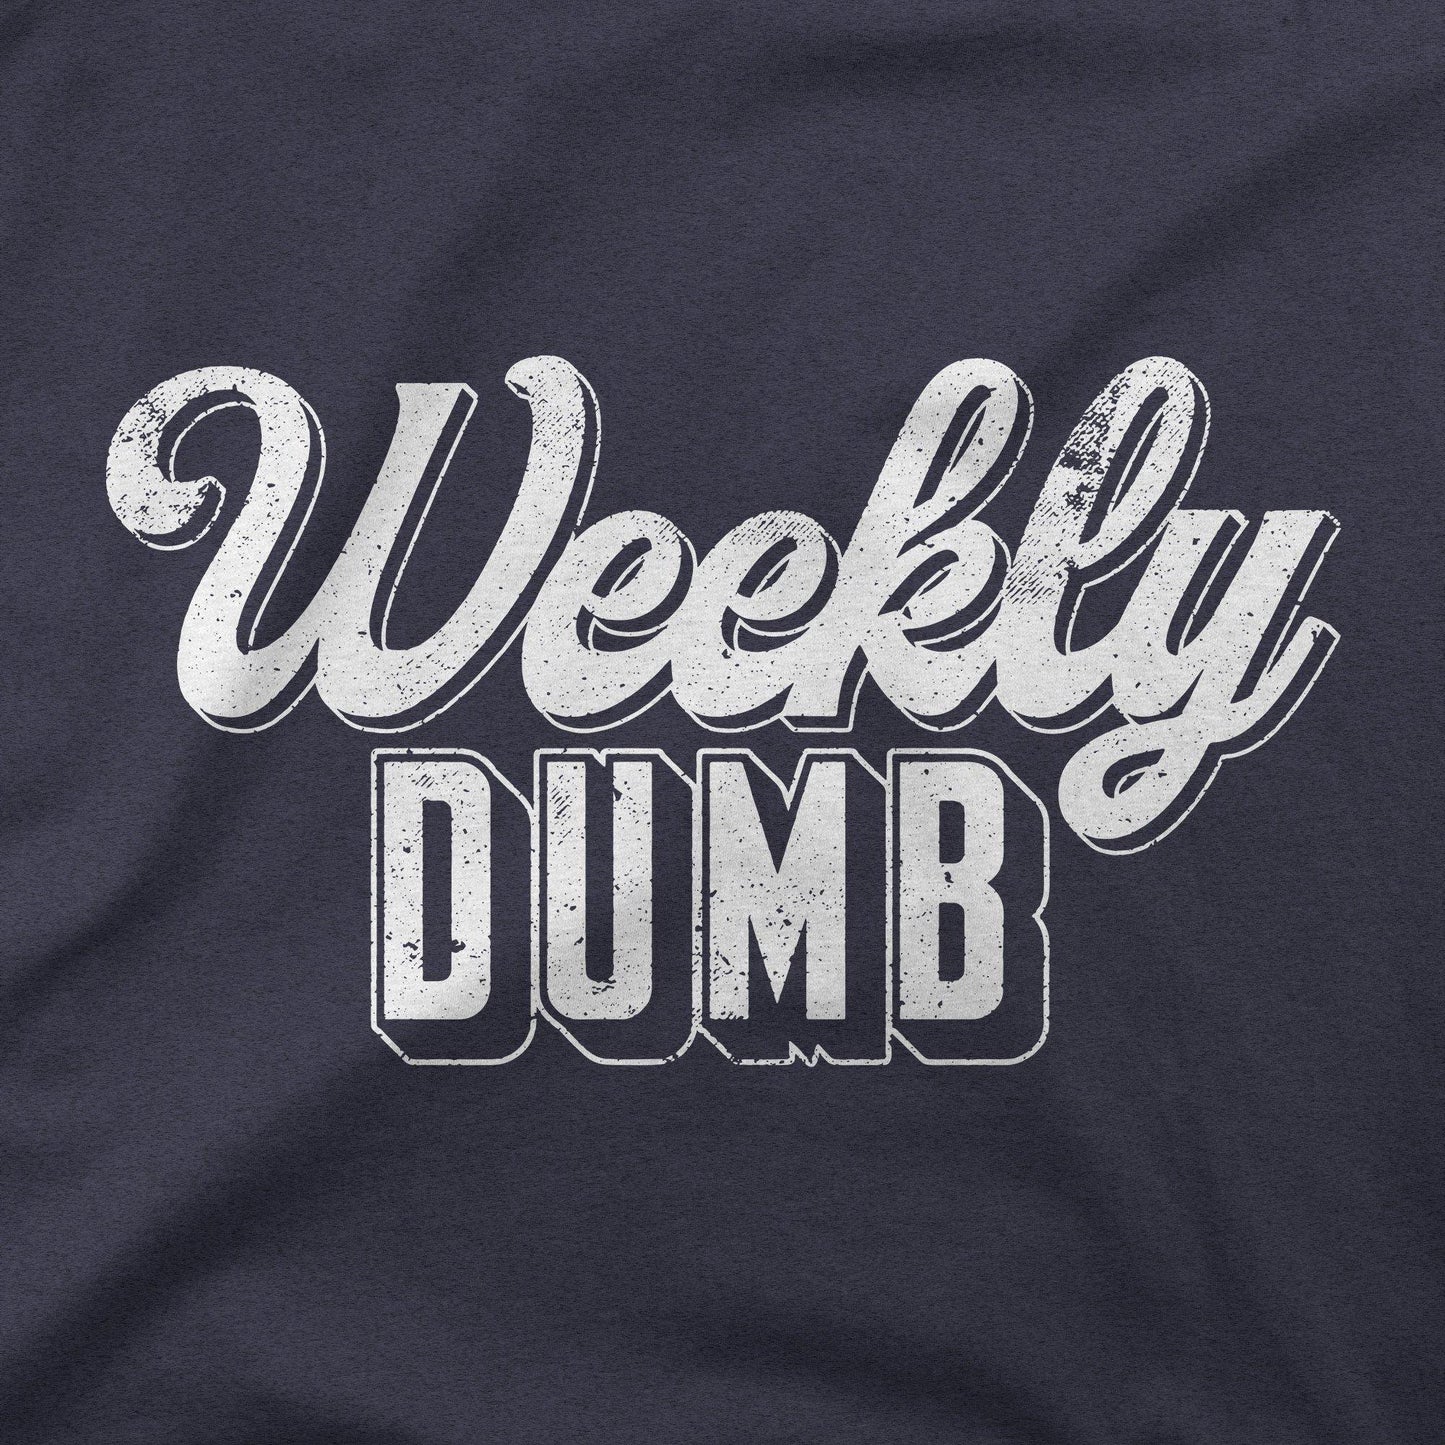 Weekly Dumb | T-Shirt - Jomboy Media